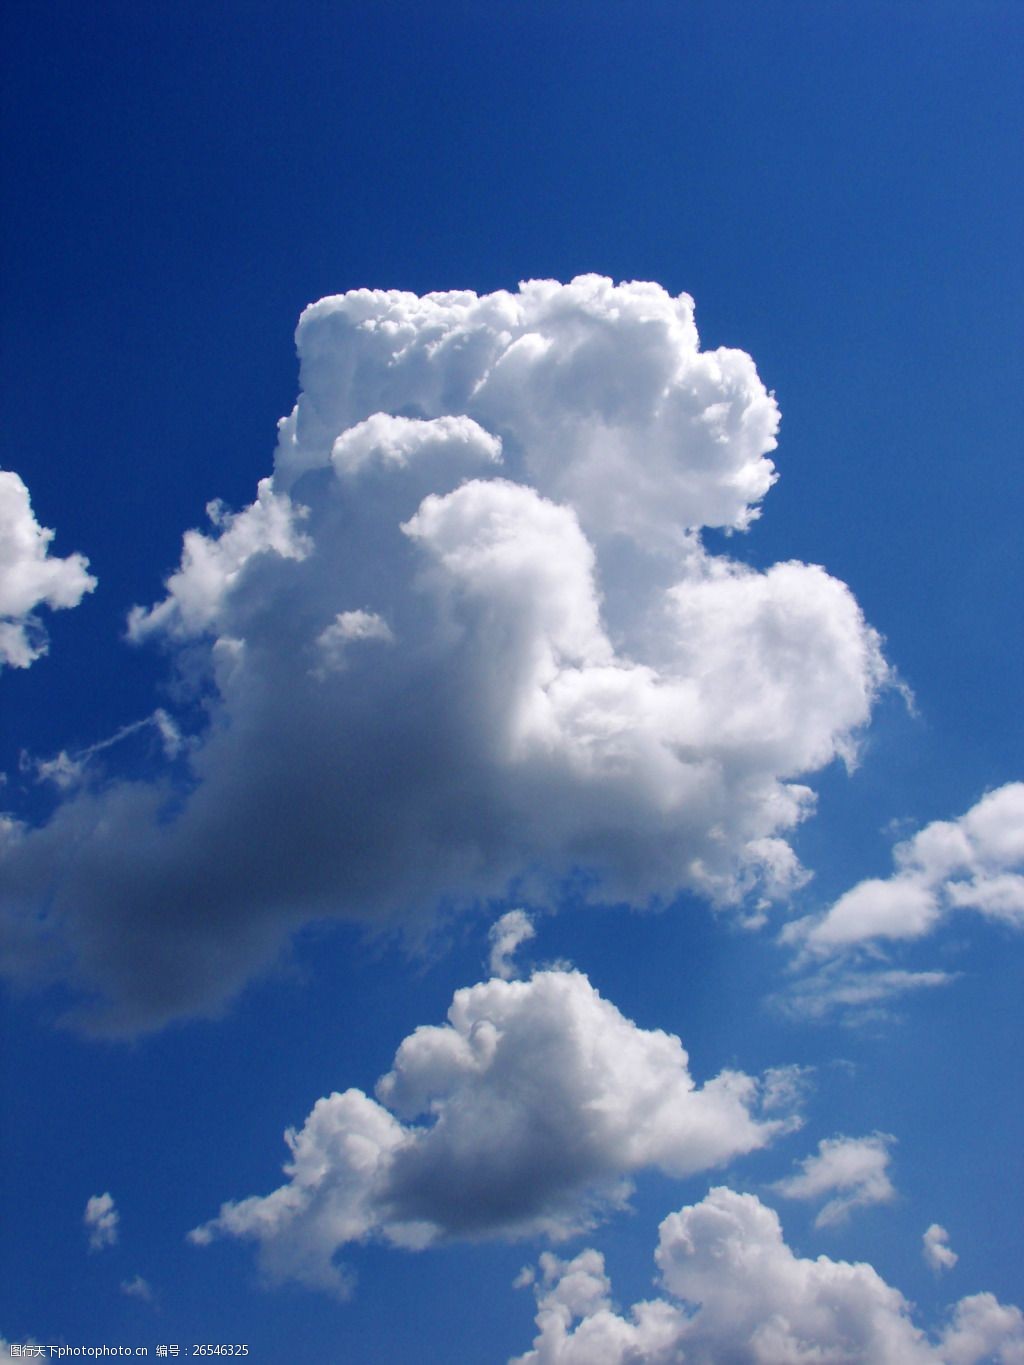 有关蓝天白云的图片图片